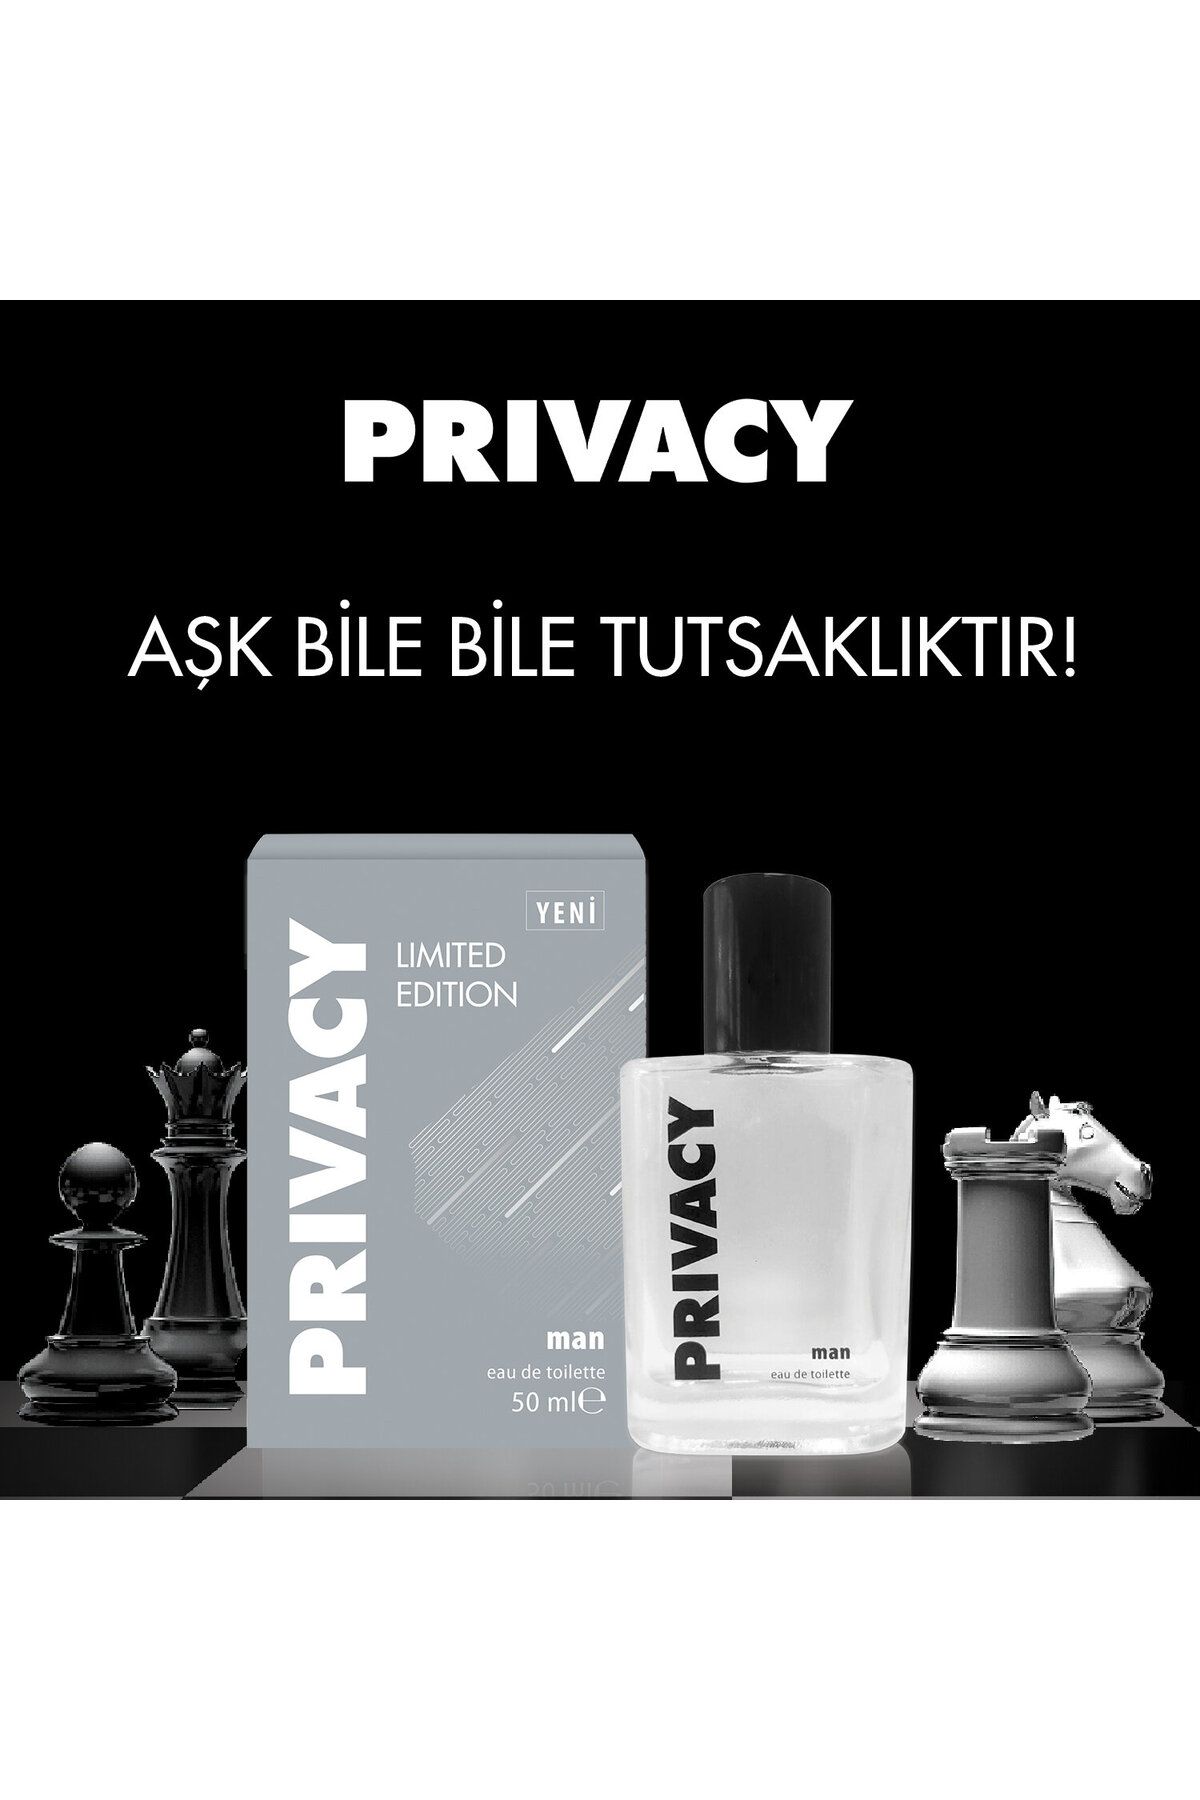 Privacy مردانه لیمیتد ادیشن ادوتویلت عطر 50 میلی لیتری ویژه آنلاین